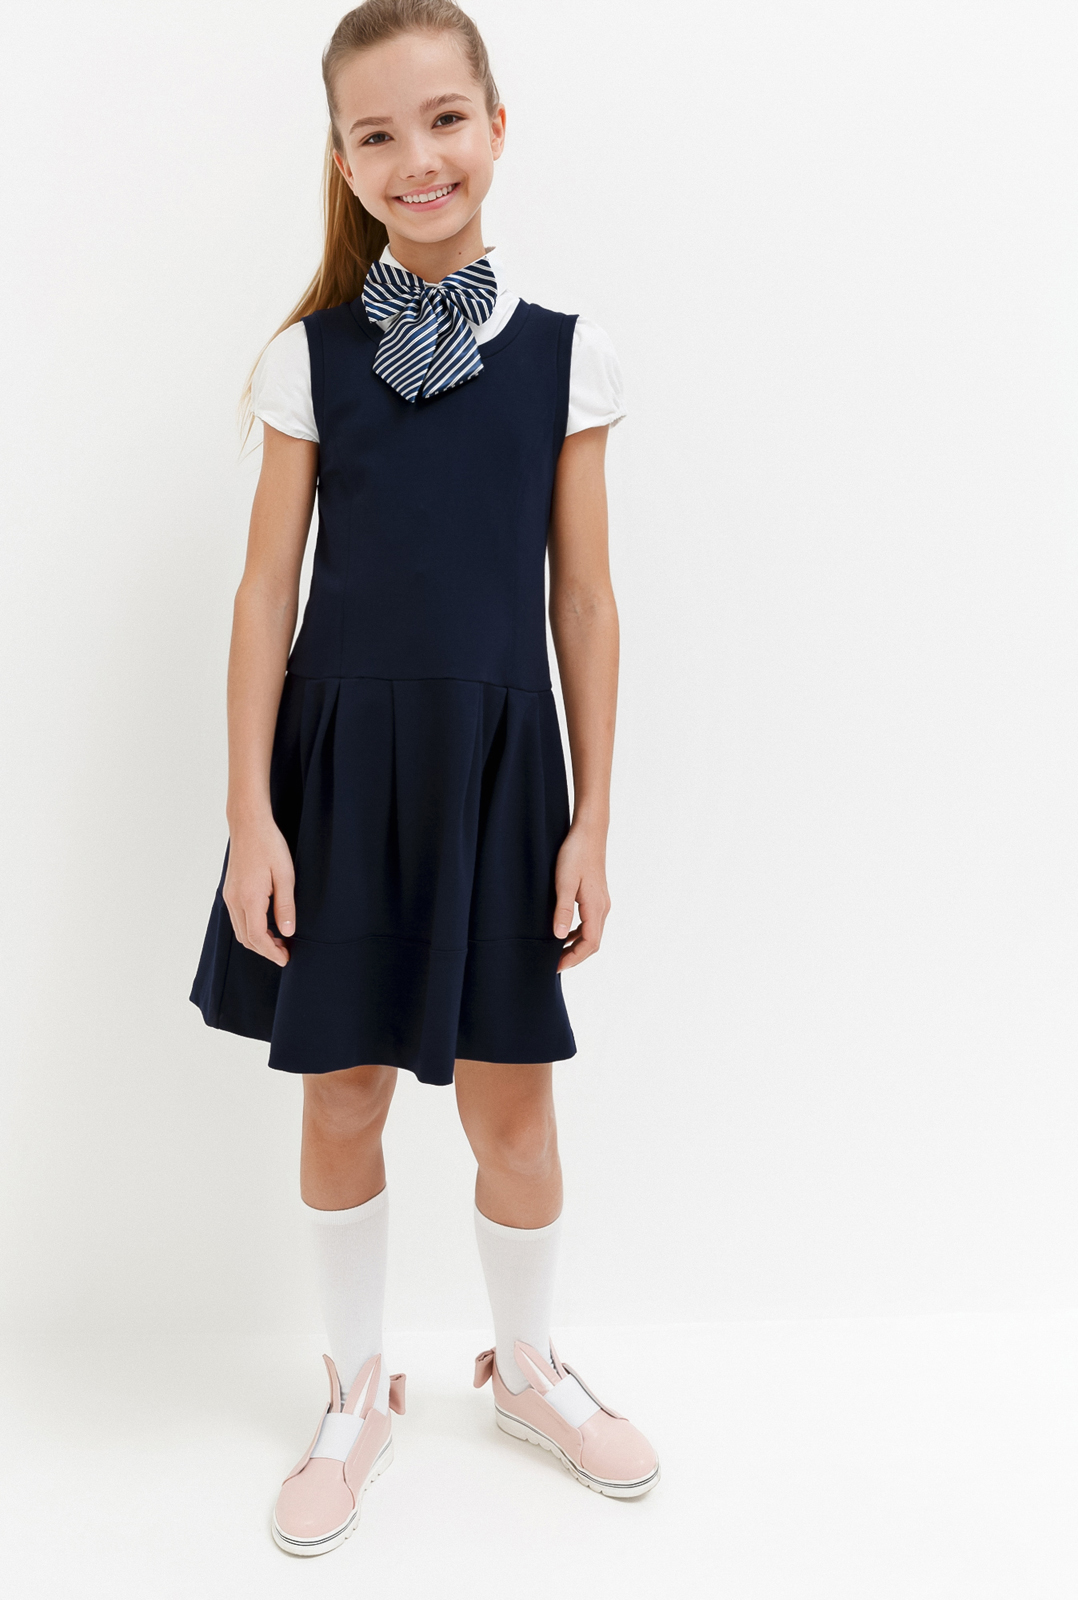 Платье для девочки Acoola Columbine, цвет: темно-голубой. 20240200028_600. Размер 122